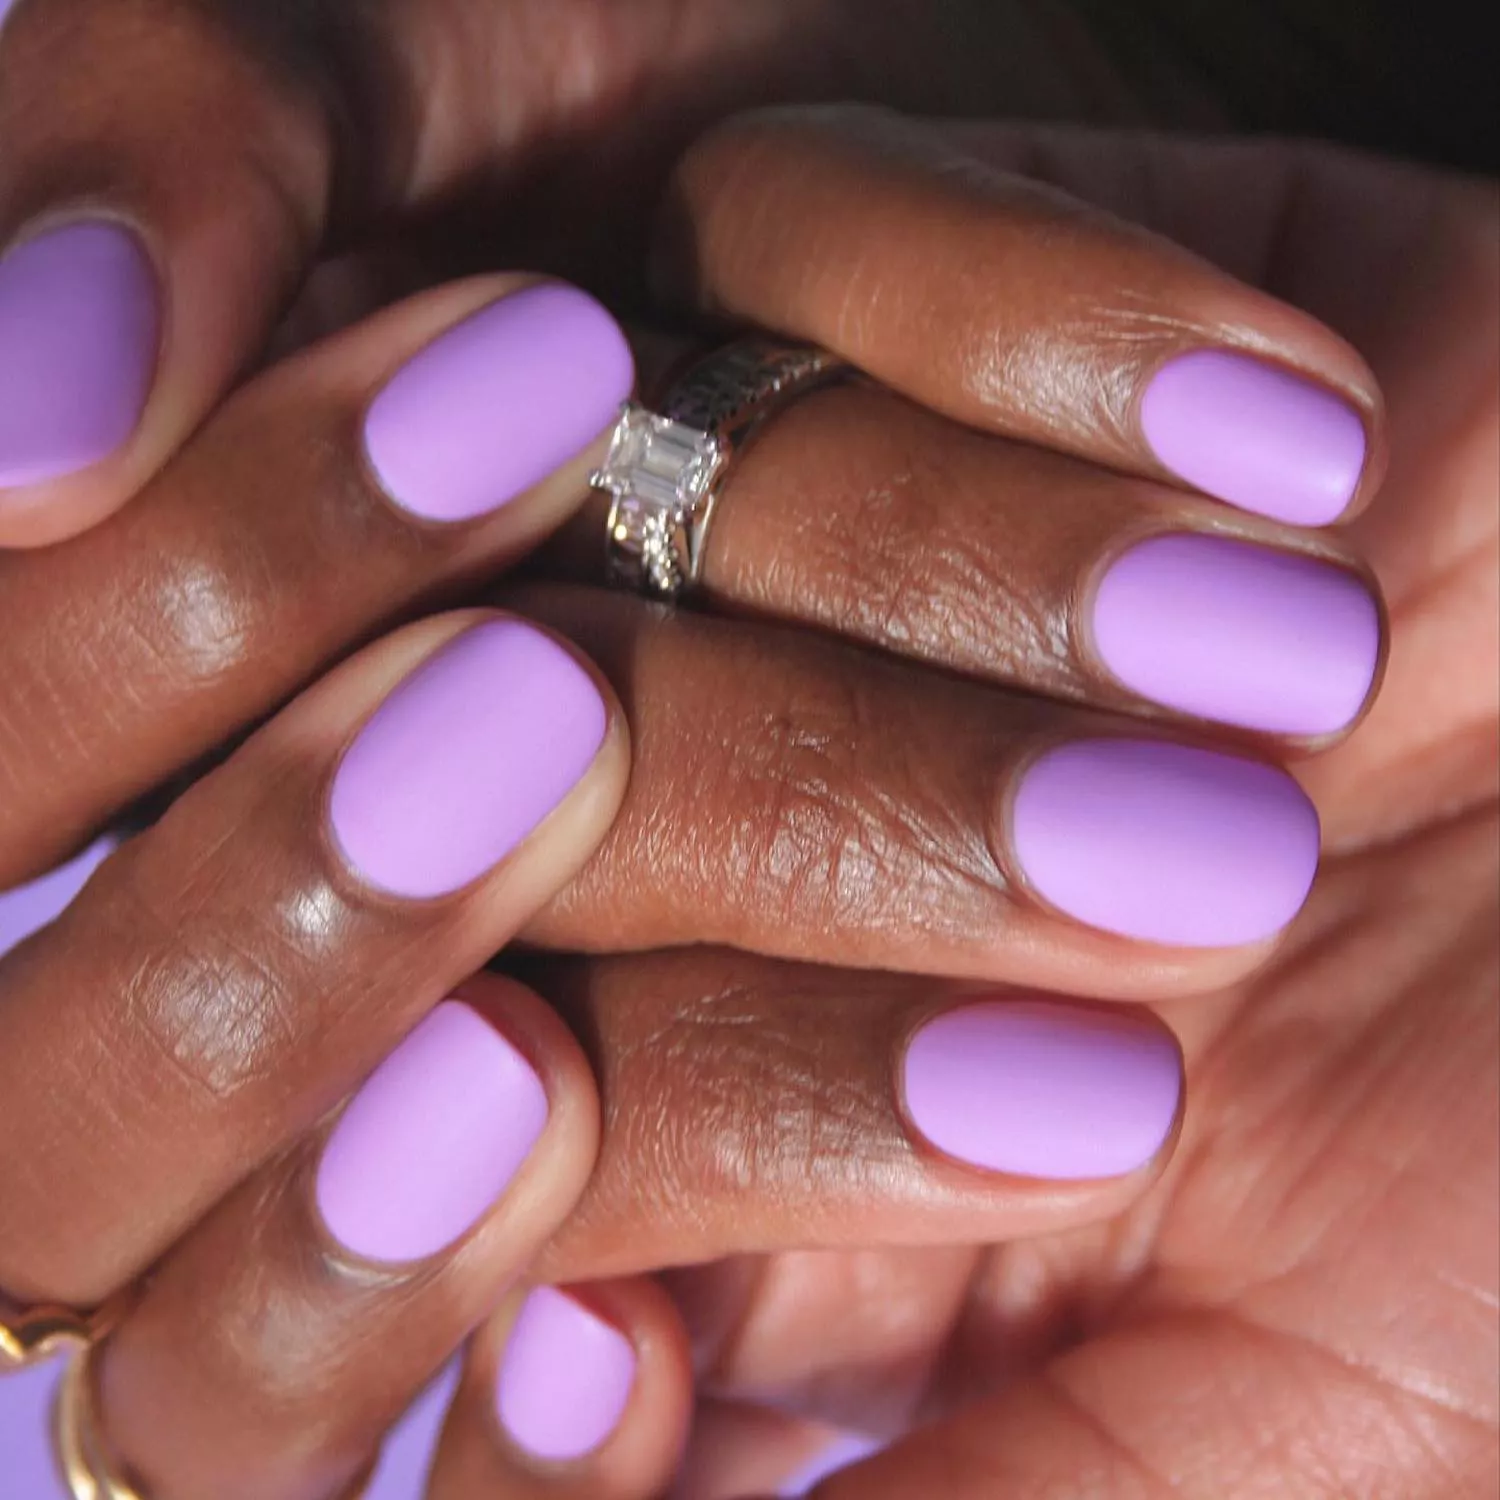 Manicure with allover bright lavender polish